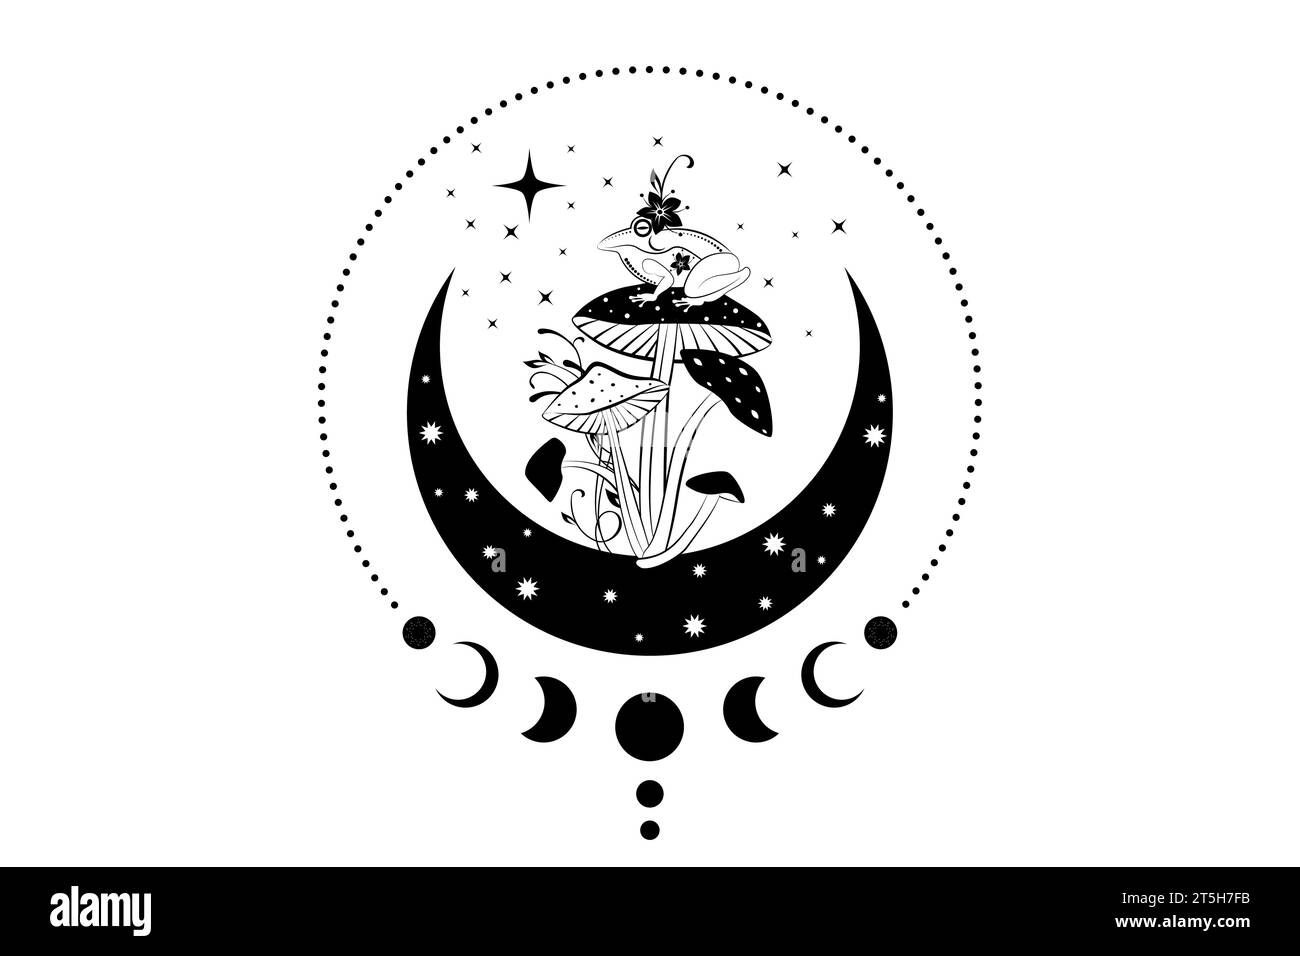 Una rana sacra spirituale sopra un fungo magico nella luna a mezzaluna della stregoneria. Rospo celeste mistico con fasi lunari e stelle. Logo fungo esoterico stregato Illustrazione Vettoriale